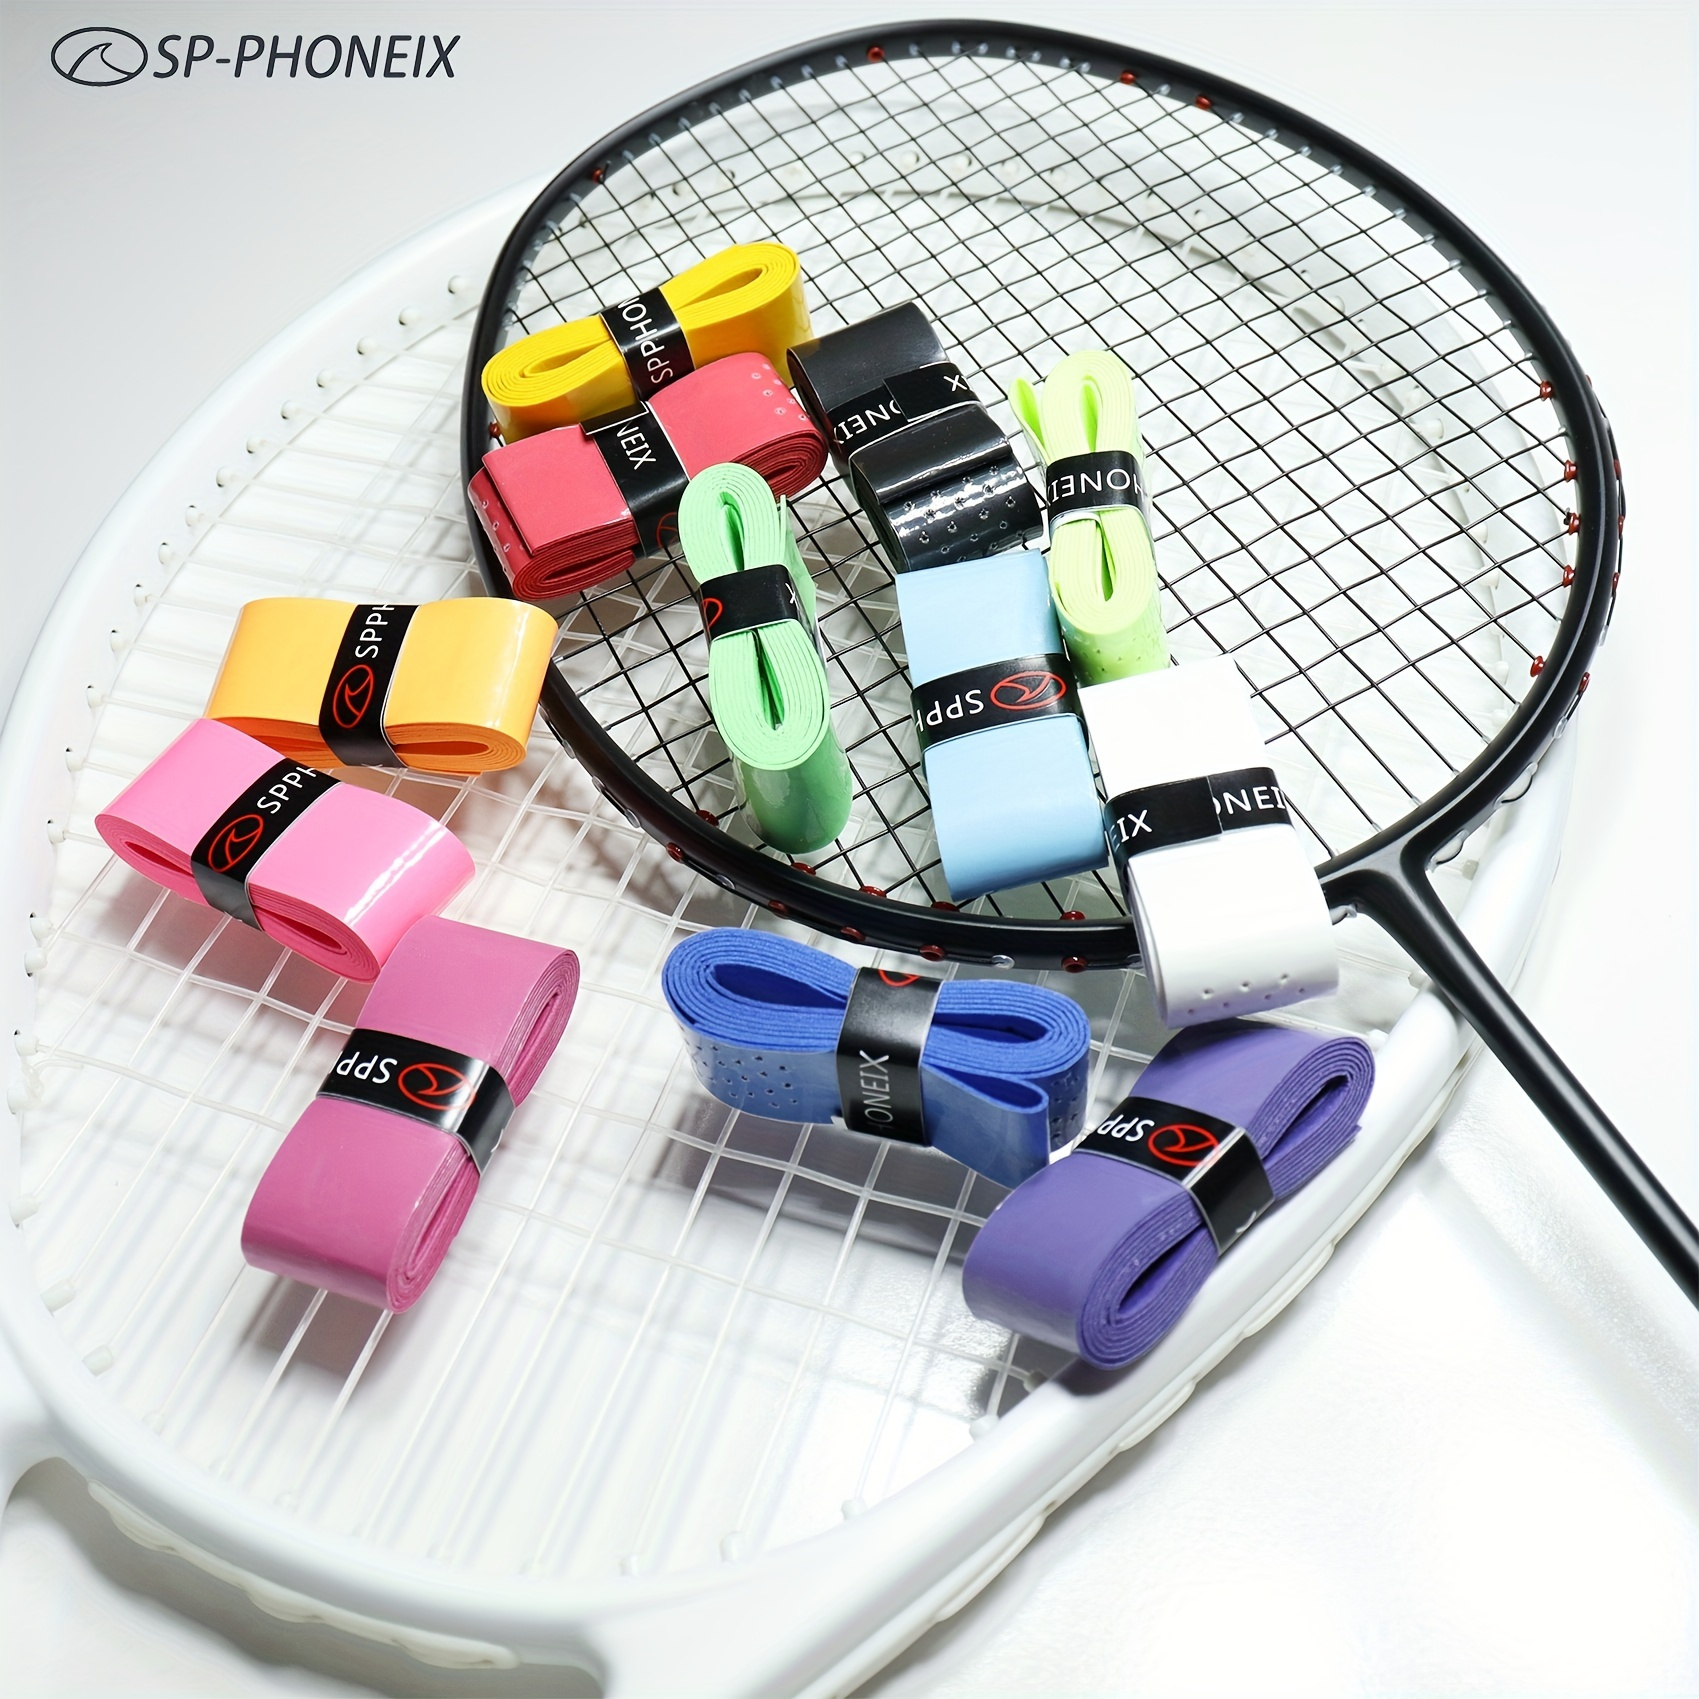 Badminton Racket Grip Tape Replacement - iFixit Repair Guide